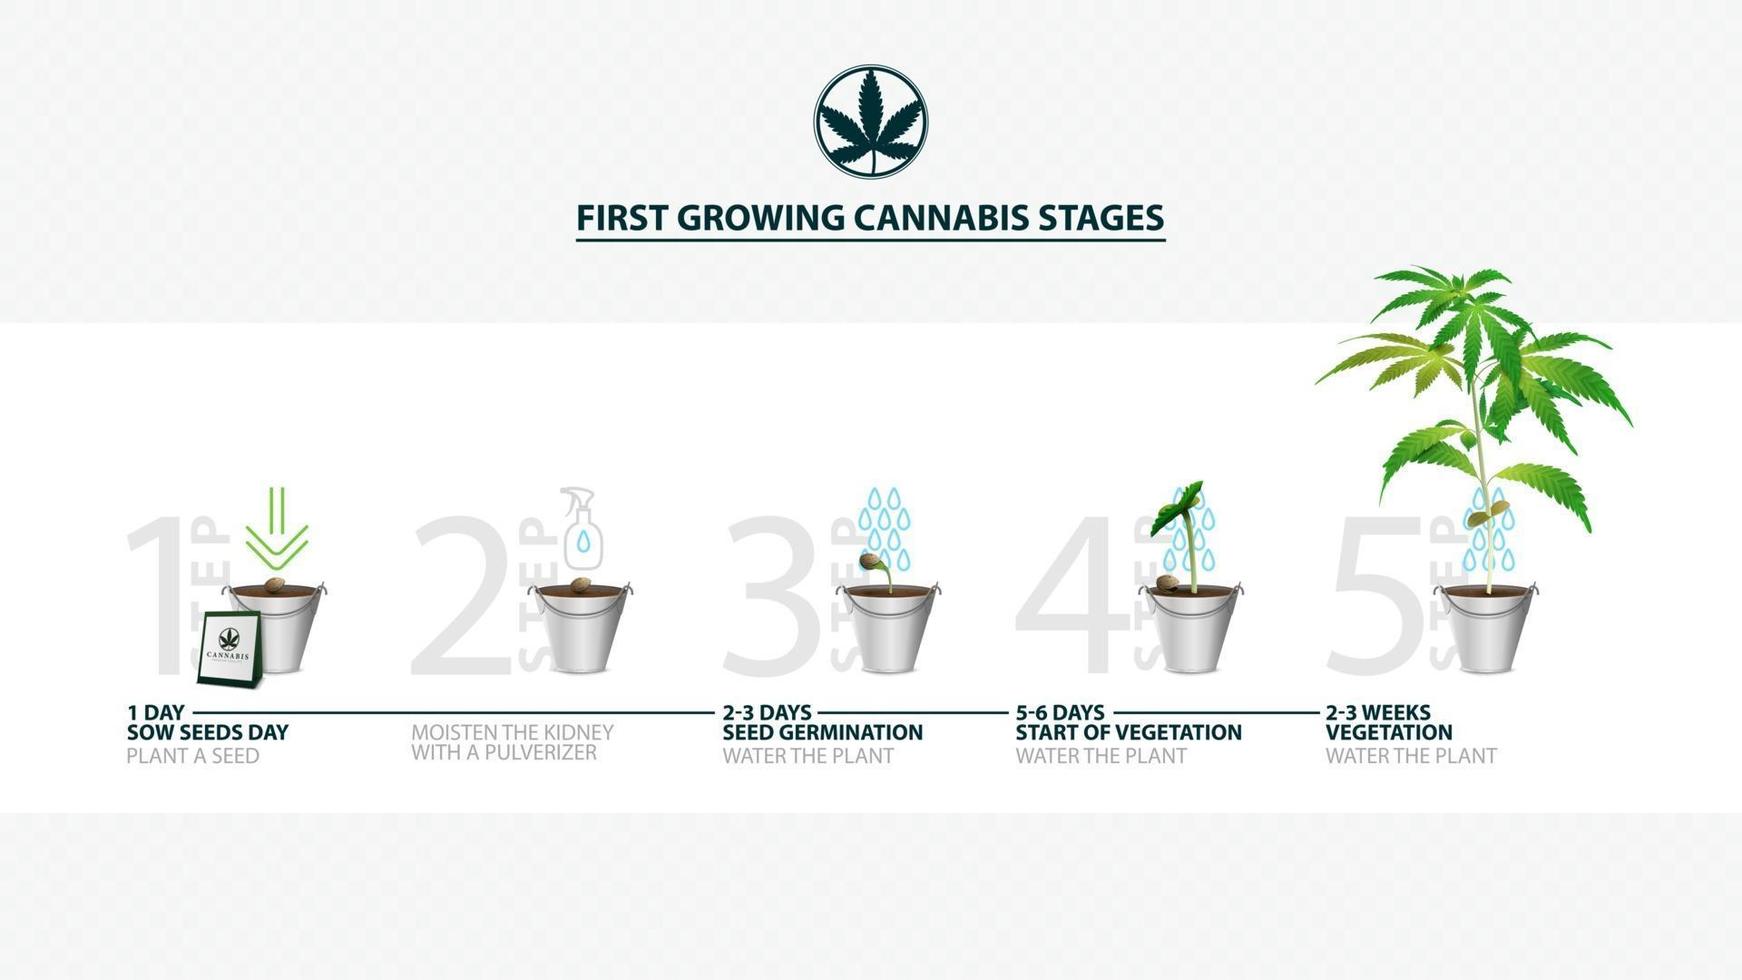 étapes de la germination des graines de cannabis de la graine à la germination, la saison de croissance du cannabis, les premières étapes de croissance du cannabis, guide de culture du cannabis vecteur